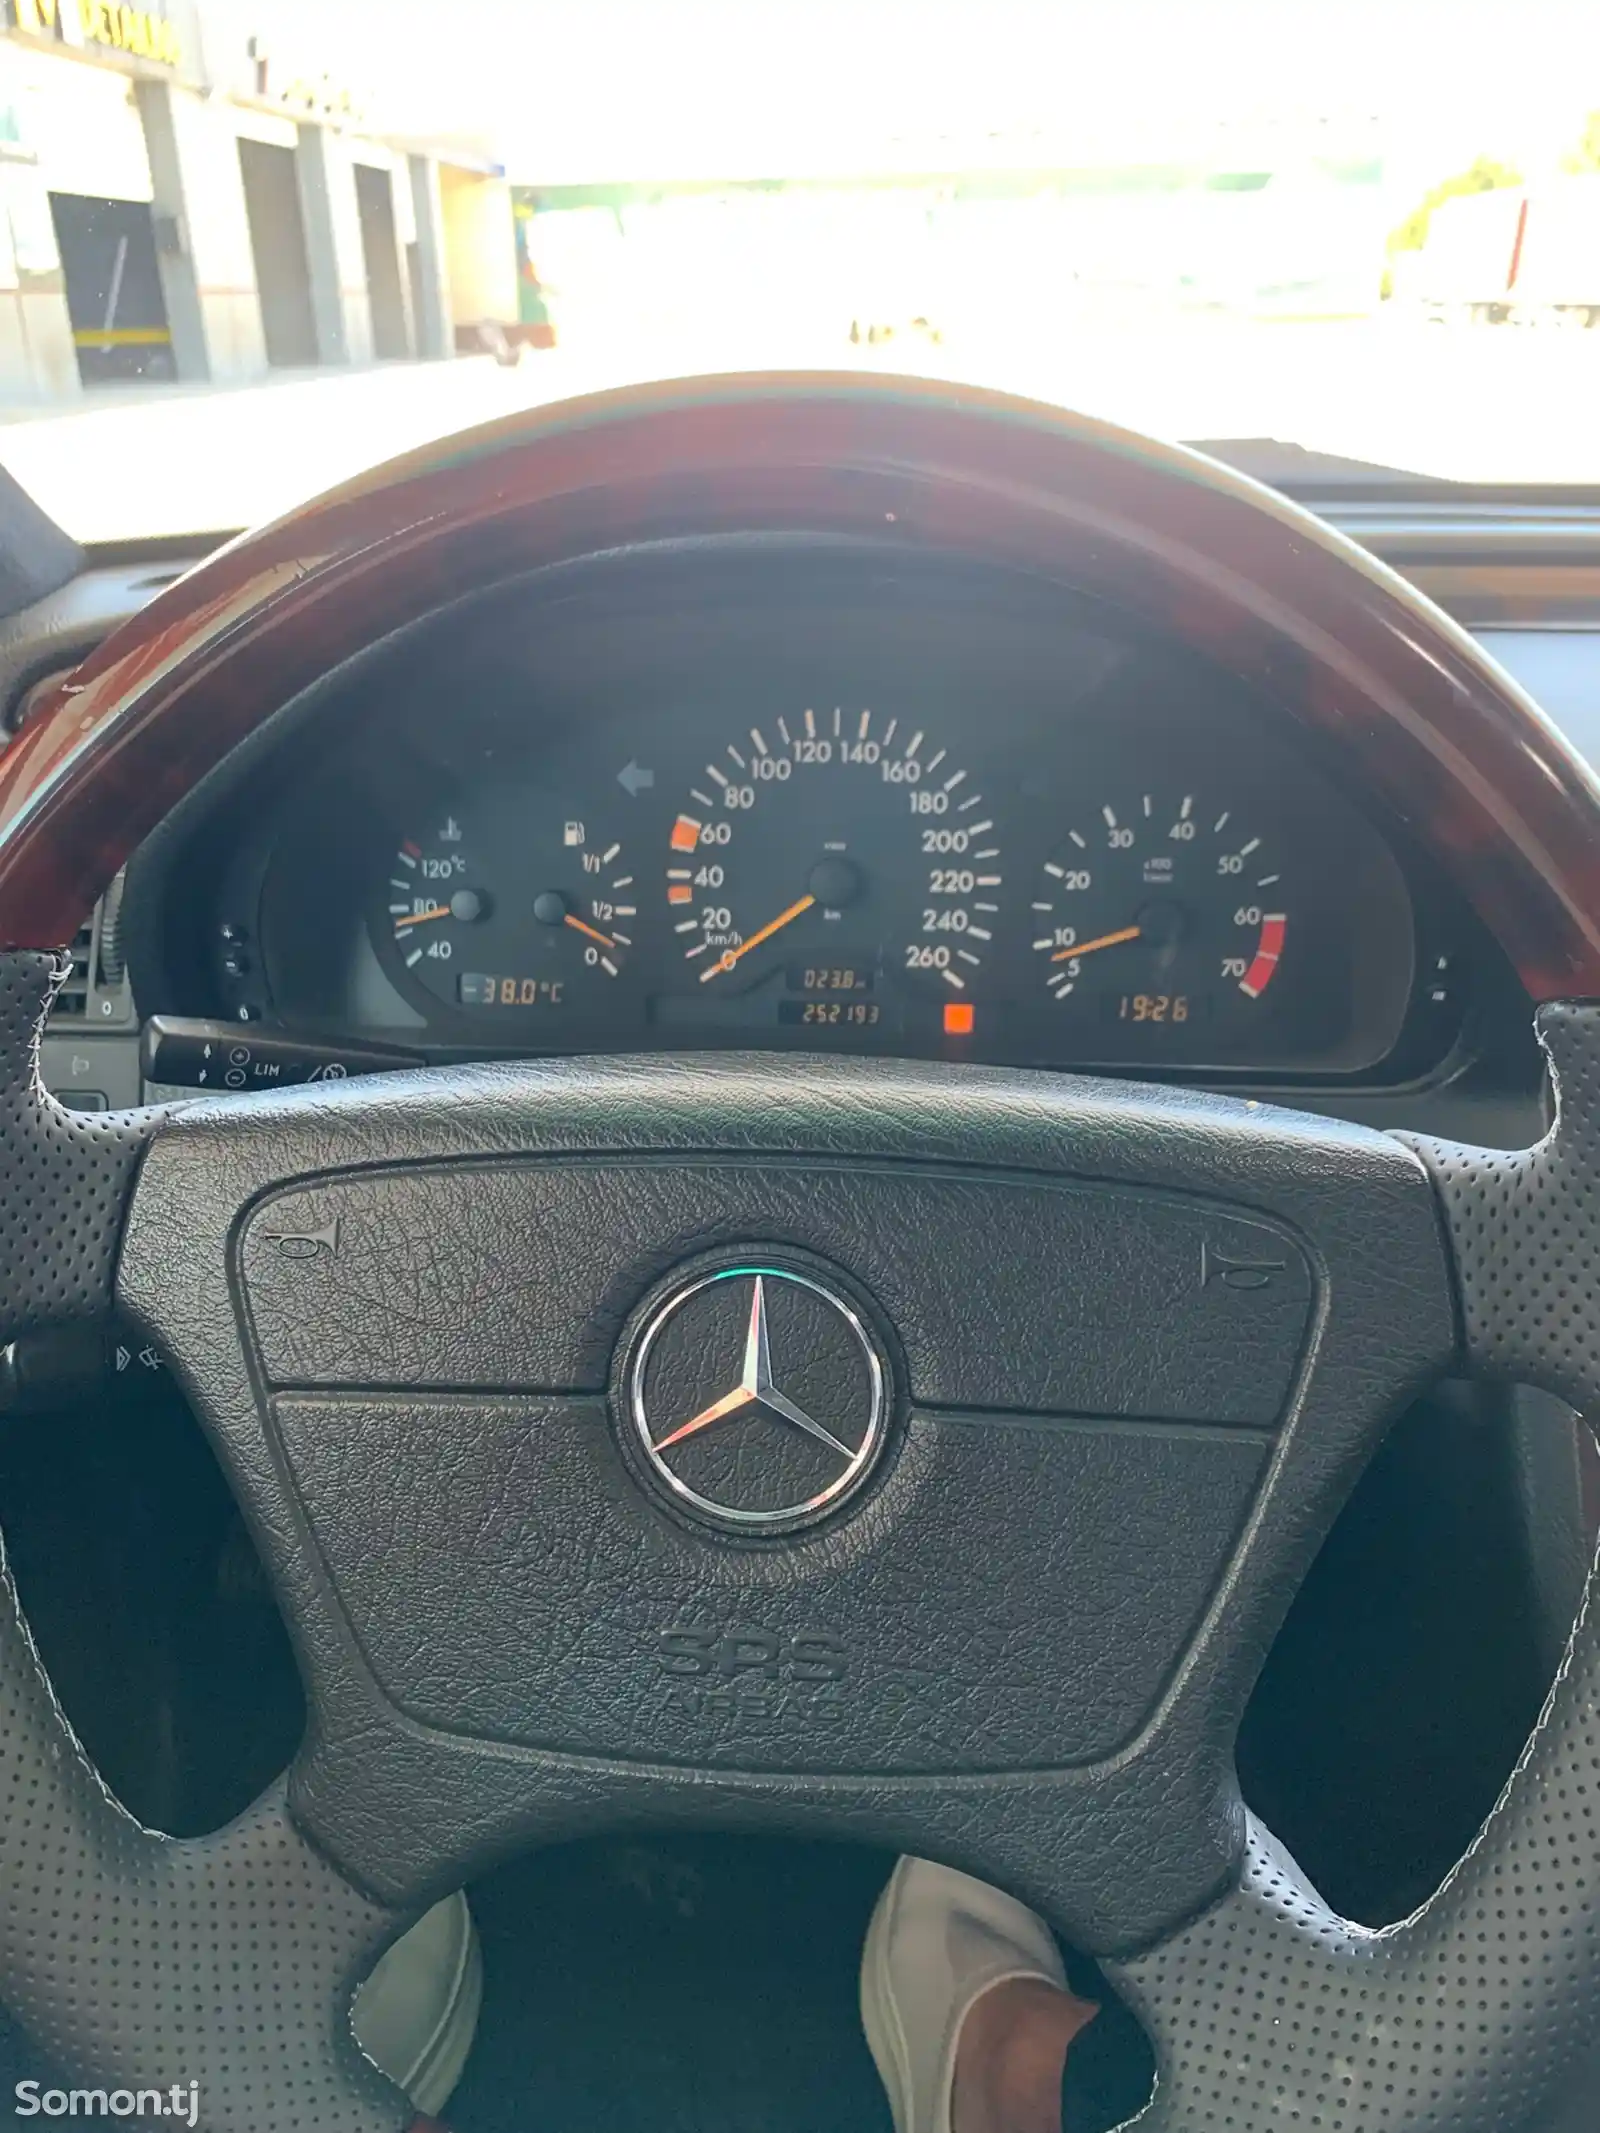 Mercedes-Benz C class, 1999-13